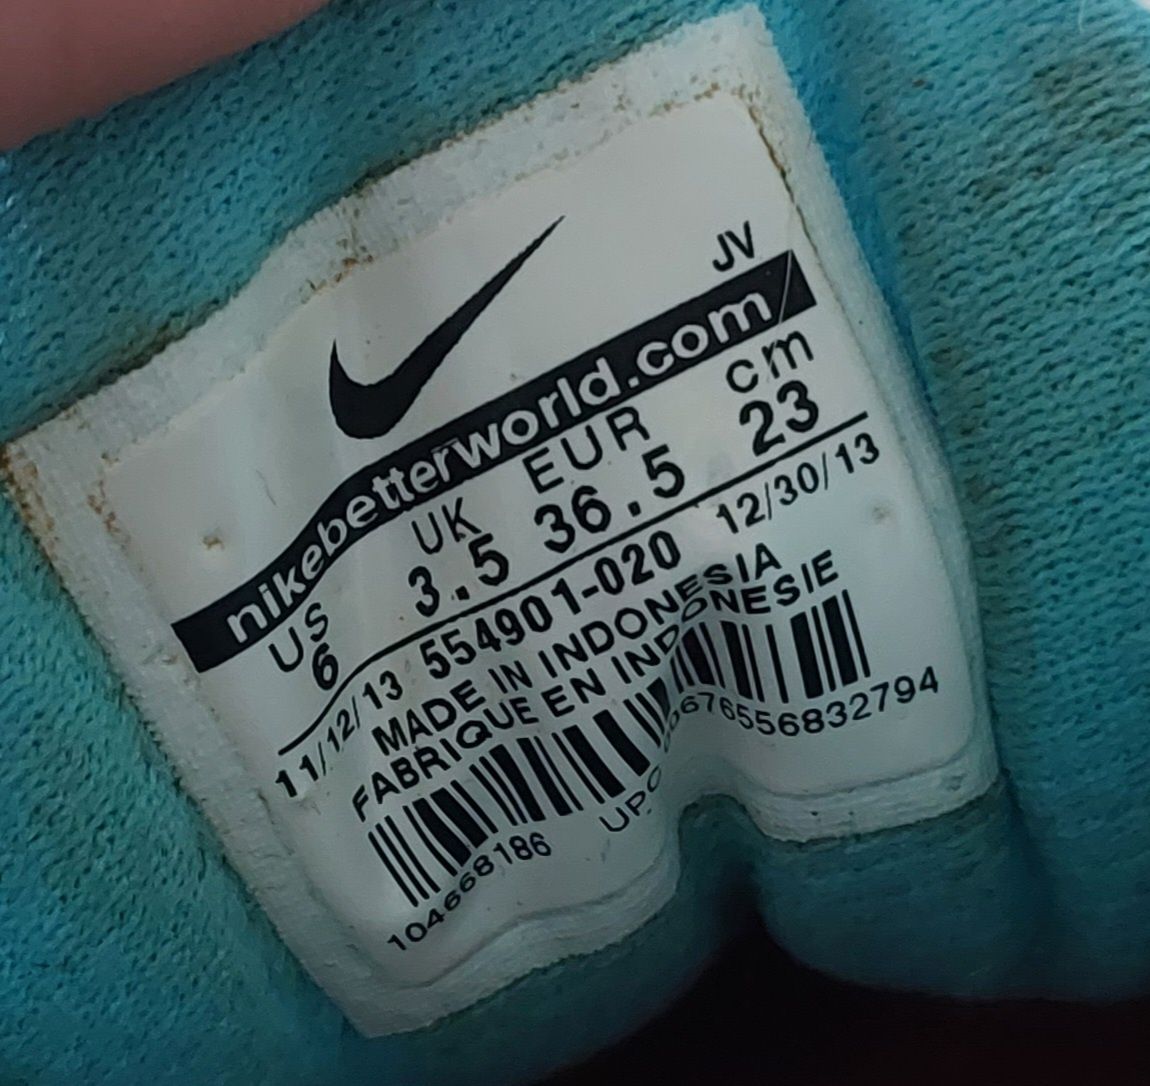 Buty damskie Nike rozmiar 36,5